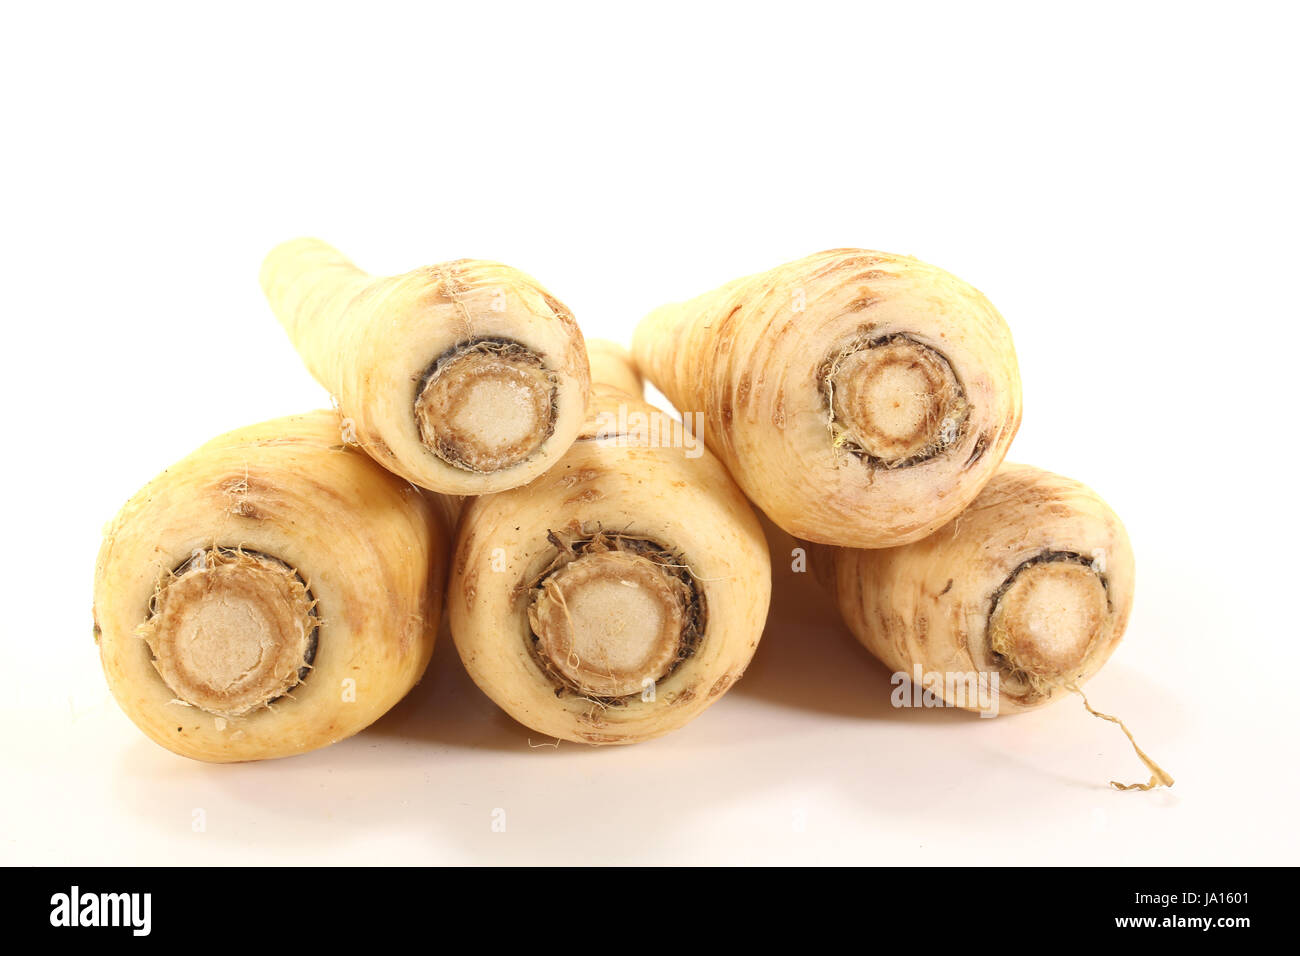 root, vegetable, turnip, long, beefy, pastinak, pastinake, pastinakenwurzel, Stock Photo